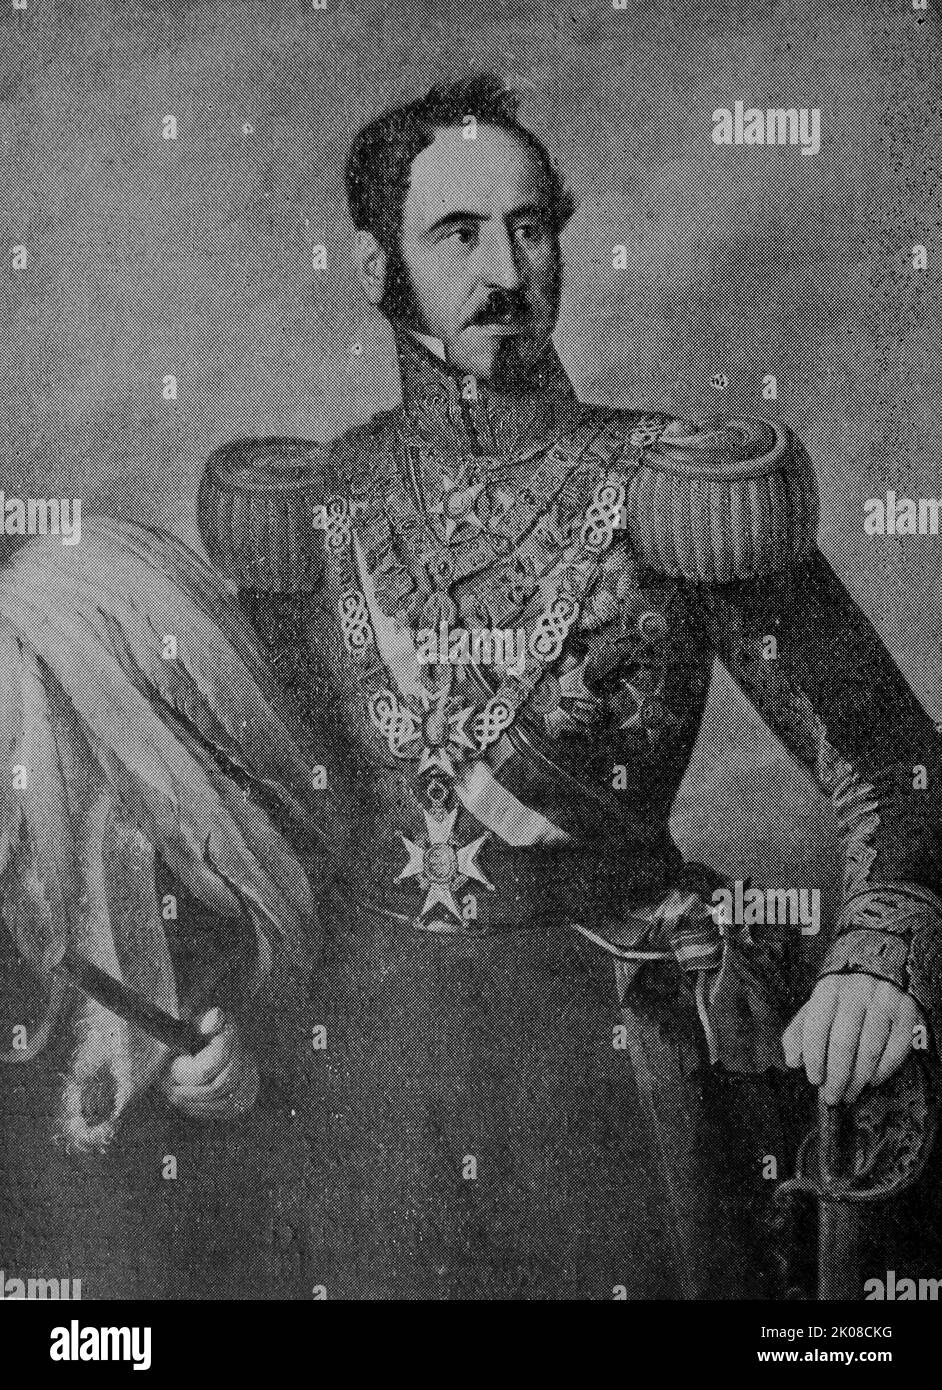 Baldomero Fernández-Espartero y Alvarez de Toro (27 de febrero de 1793 - 8 de enero de 1879) fue un mariscal y estadista español Foto de stock